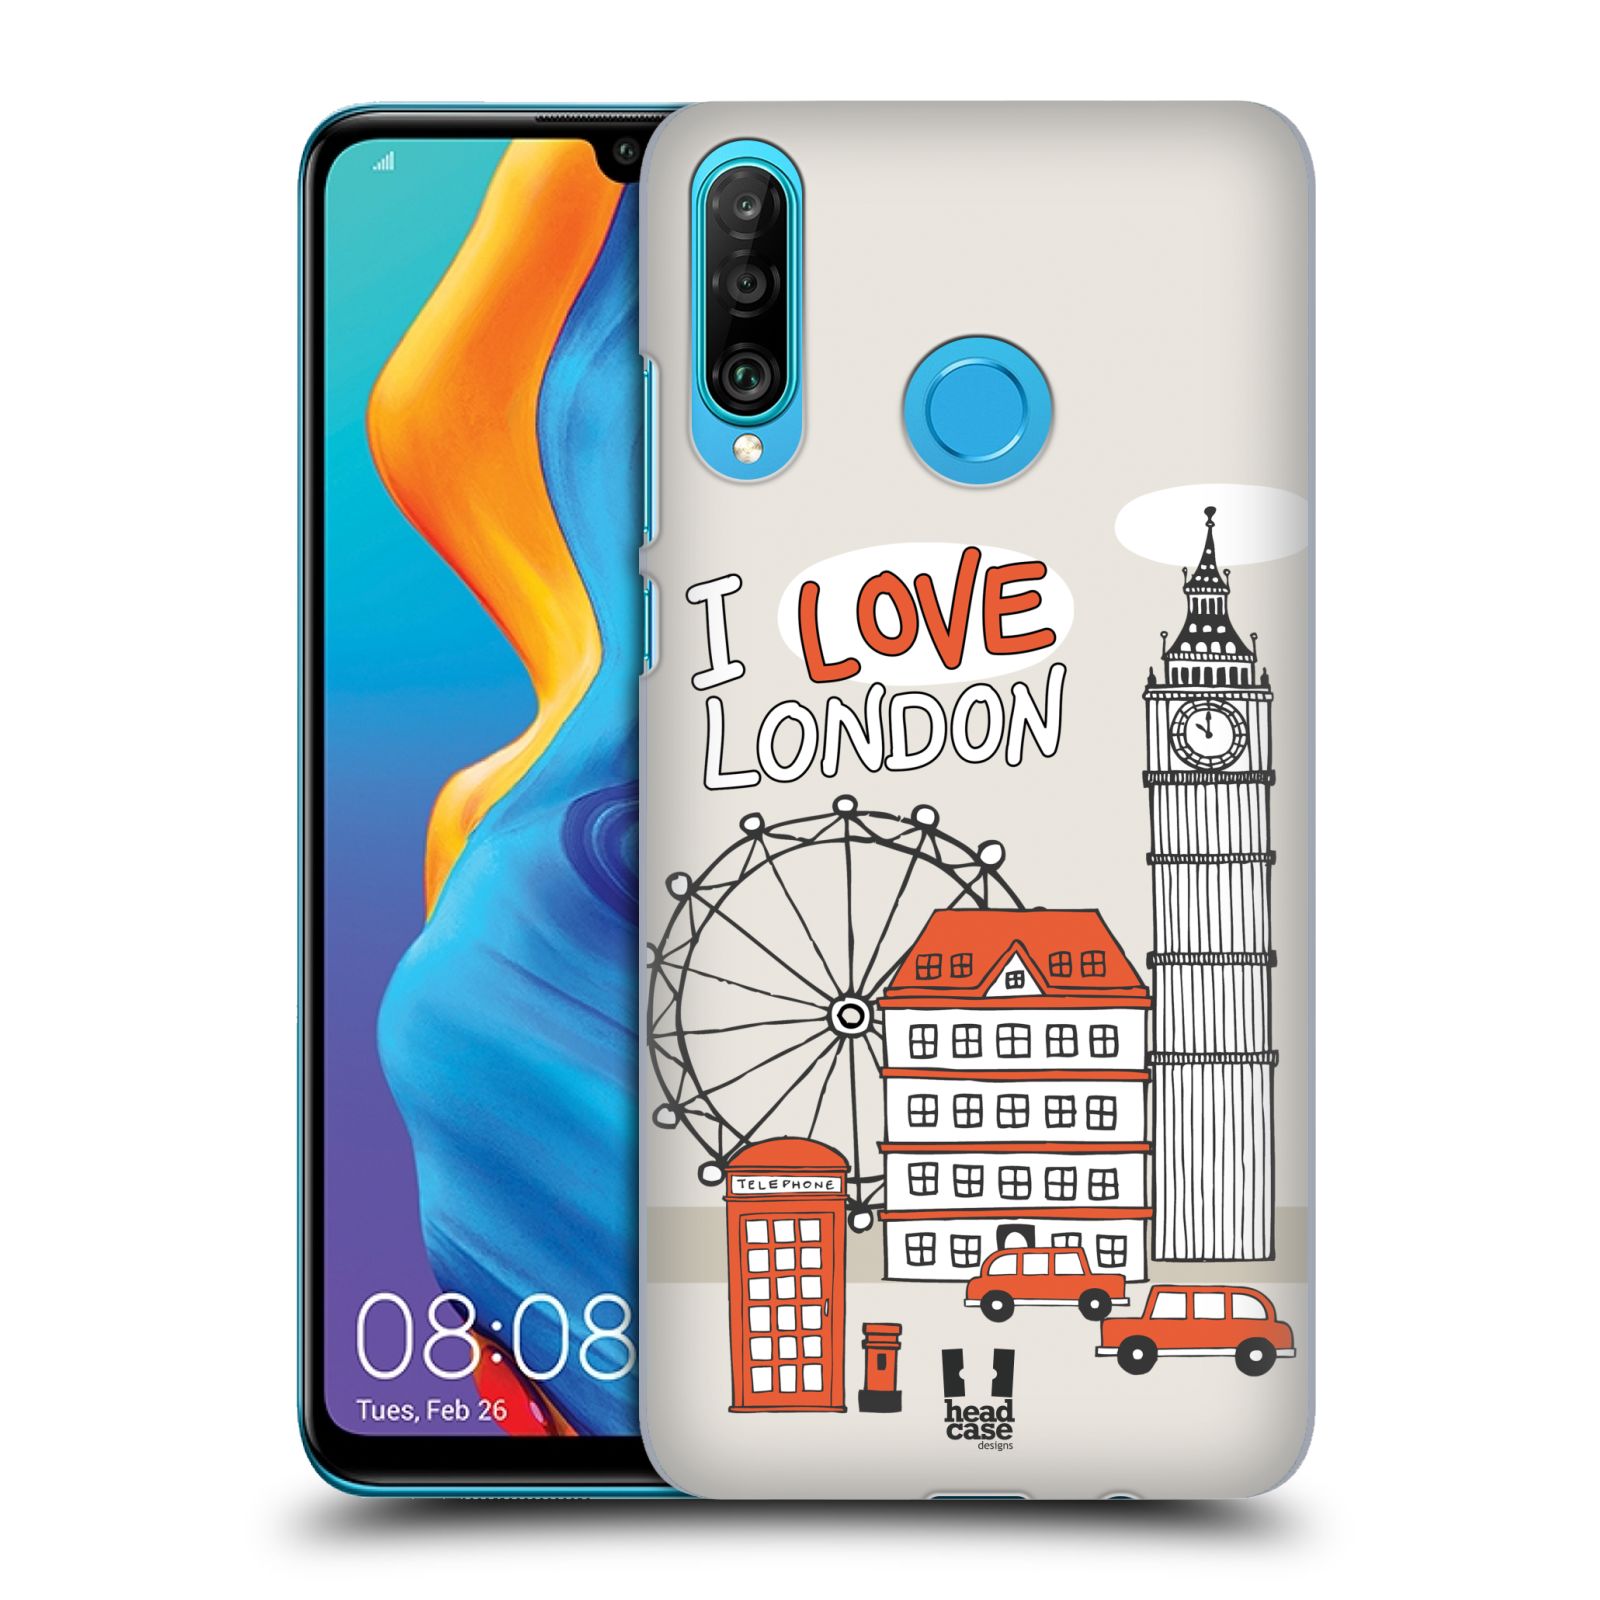 Pouzdro na mobil Huawei P30 LITE - HEAD CASE - vzor Kreslená městečka ČERVENÁ, Anglie, Londýn, I LOVE LONDON